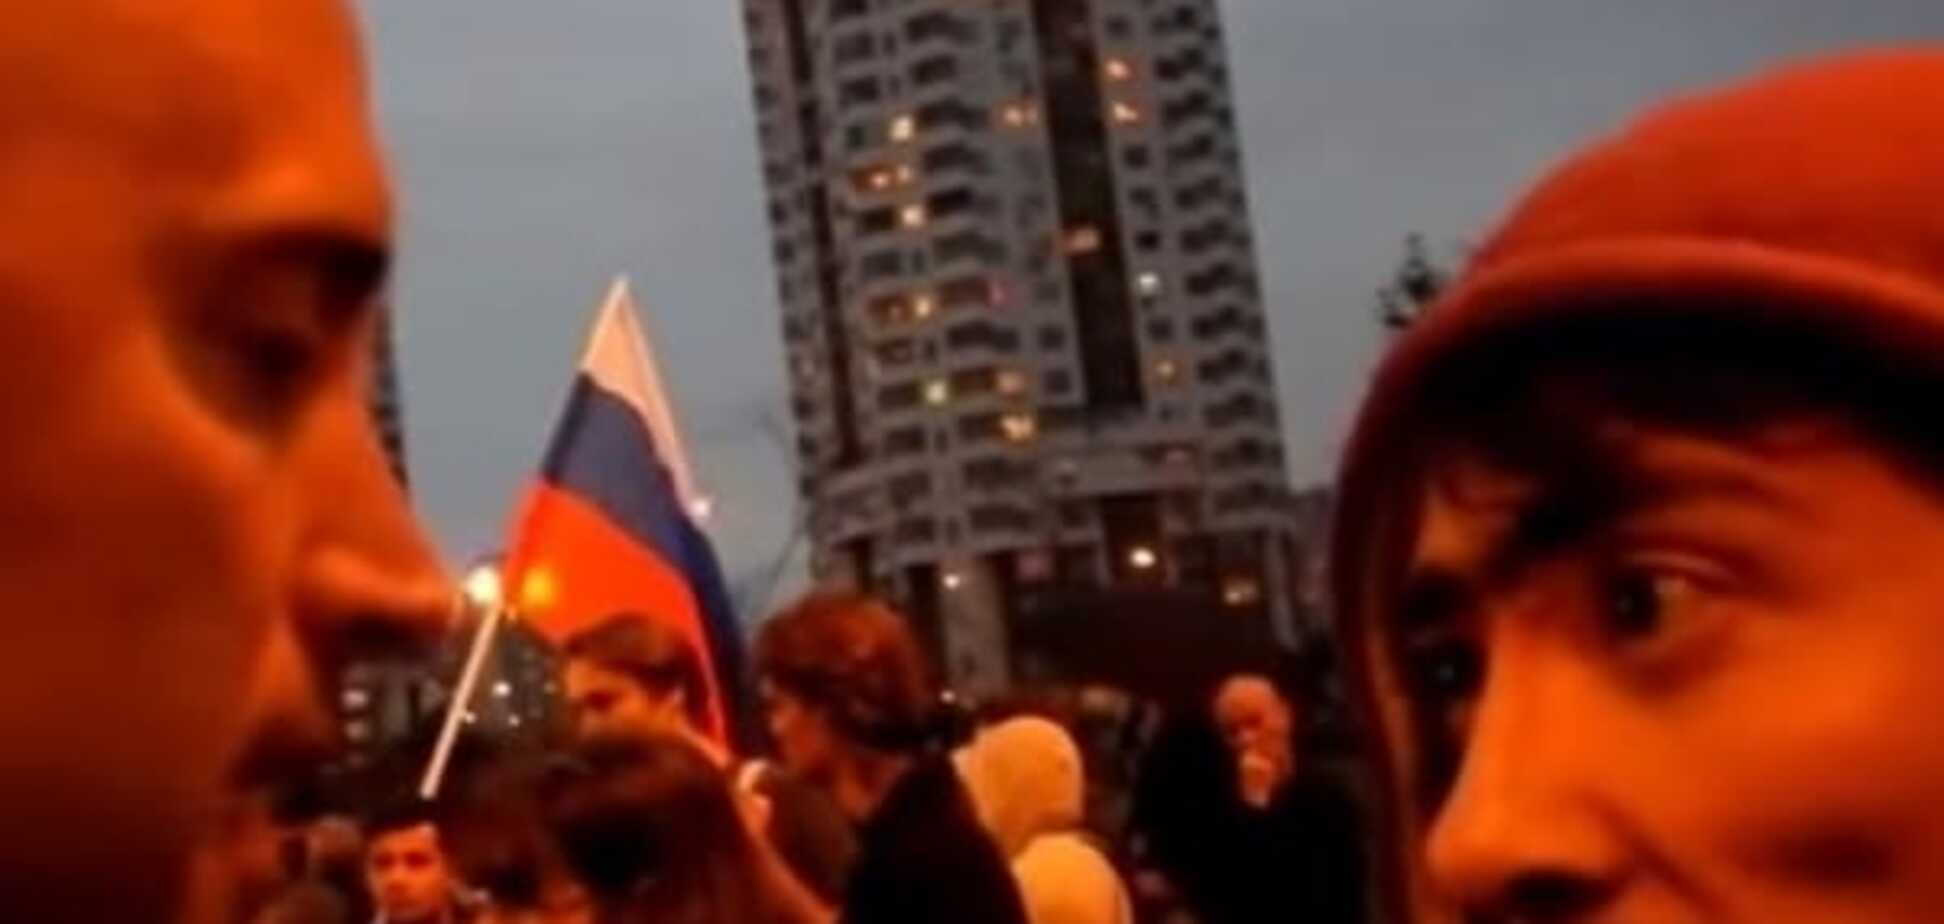 Шістка бандитська! На мітингу в Москві 'опустили' пропагандиста Філліпса: опубліковано відео